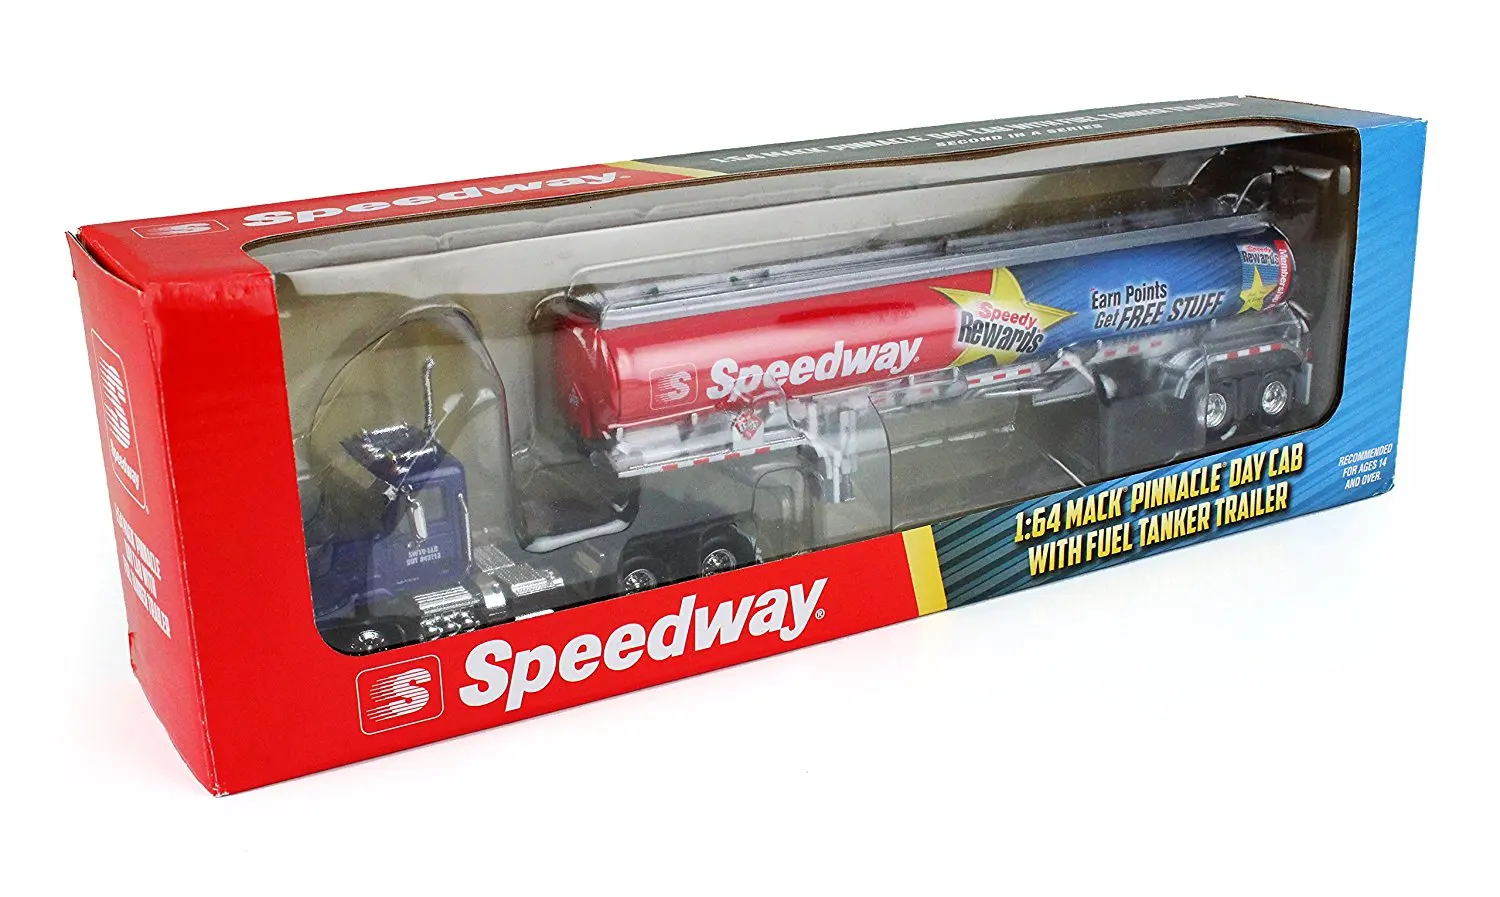 2018 speedway toy truck